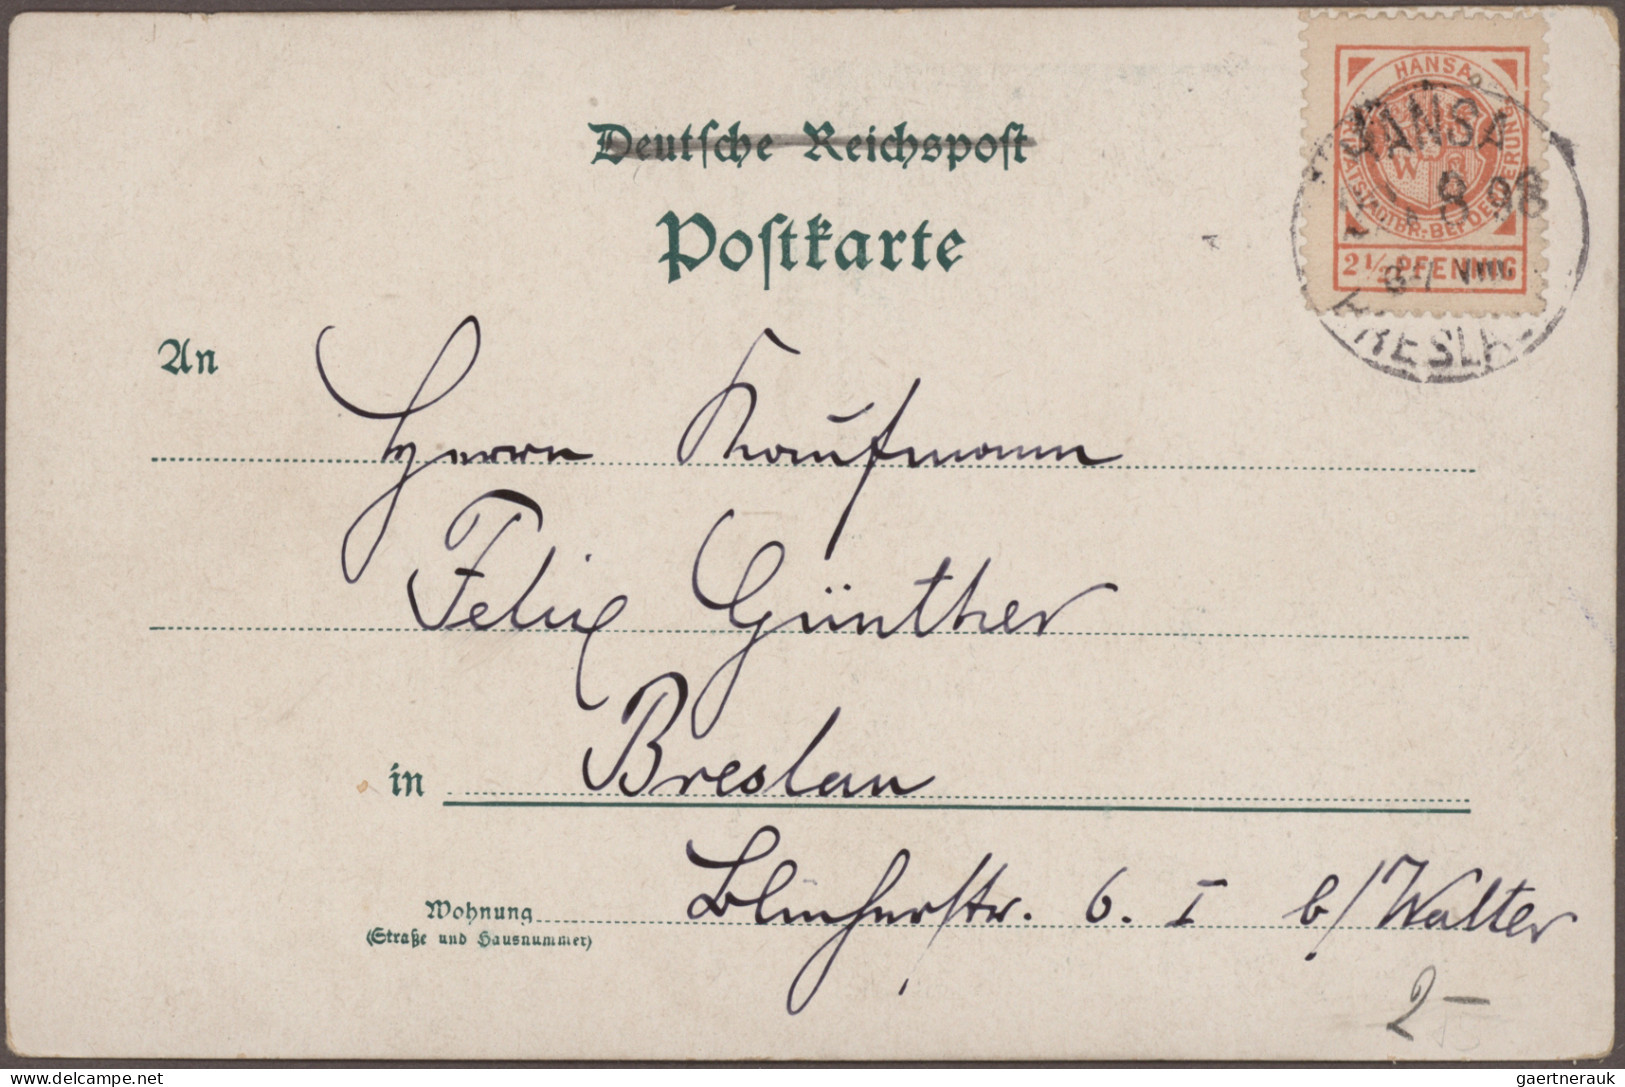 Deutsches Reich - Privatpost (Stadtpost): 1886/1900, Posten mit ca. 140 Briefen